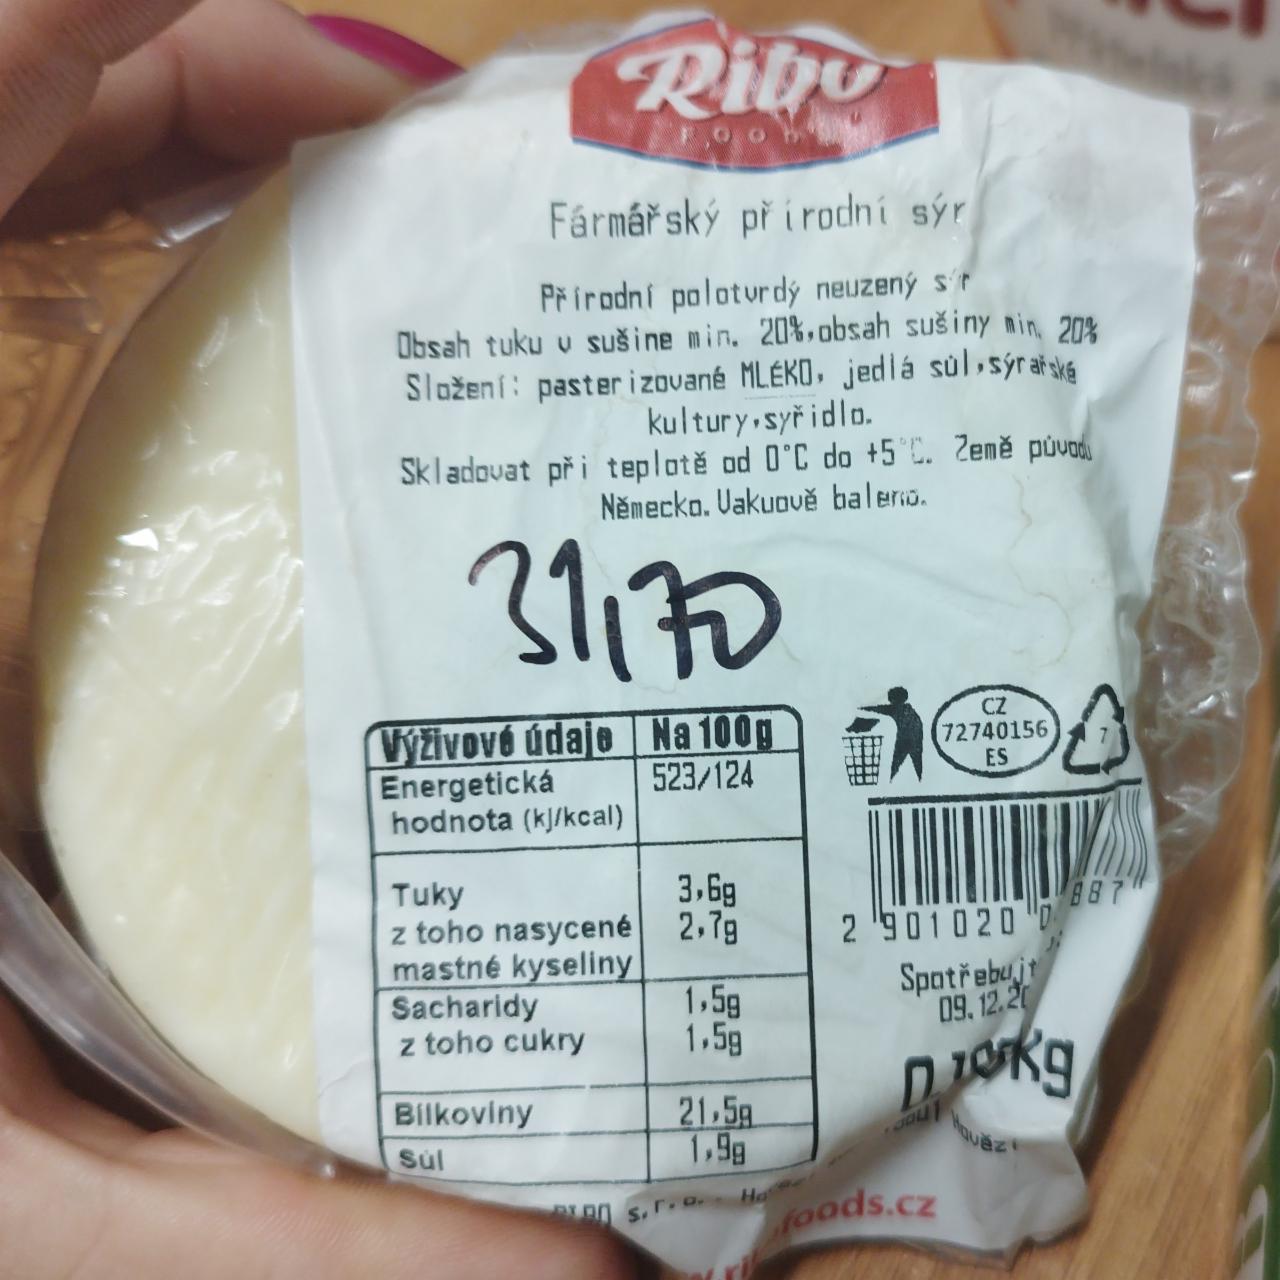 Fotografie - Farmářský přírodní sýr Ribo foods